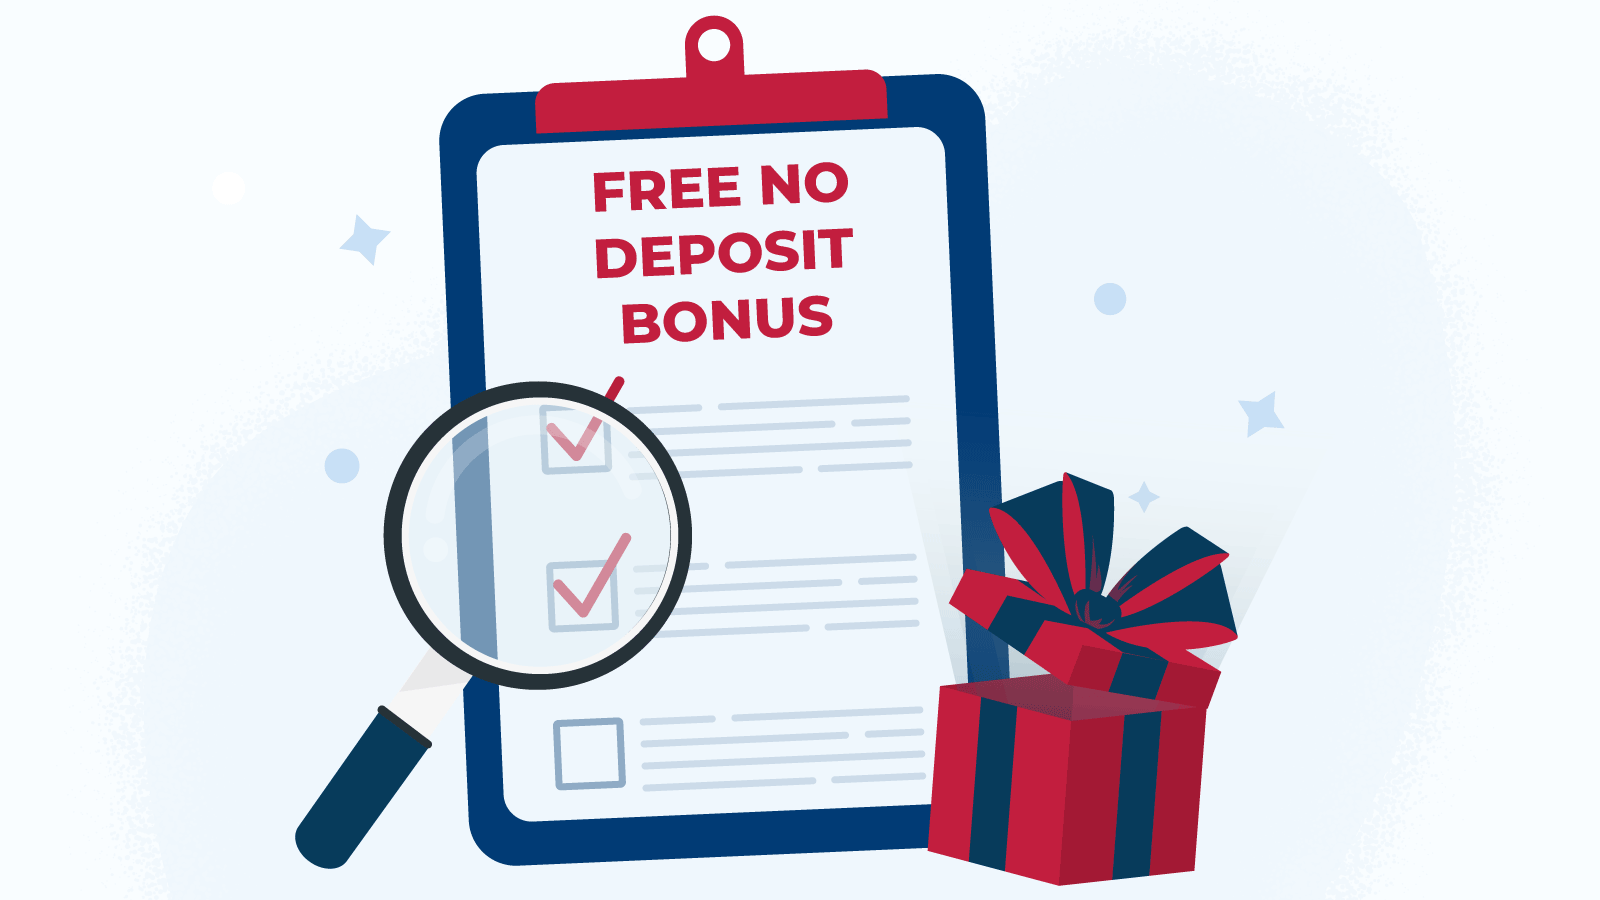 How to claim a free no deposit bonus at a live casino